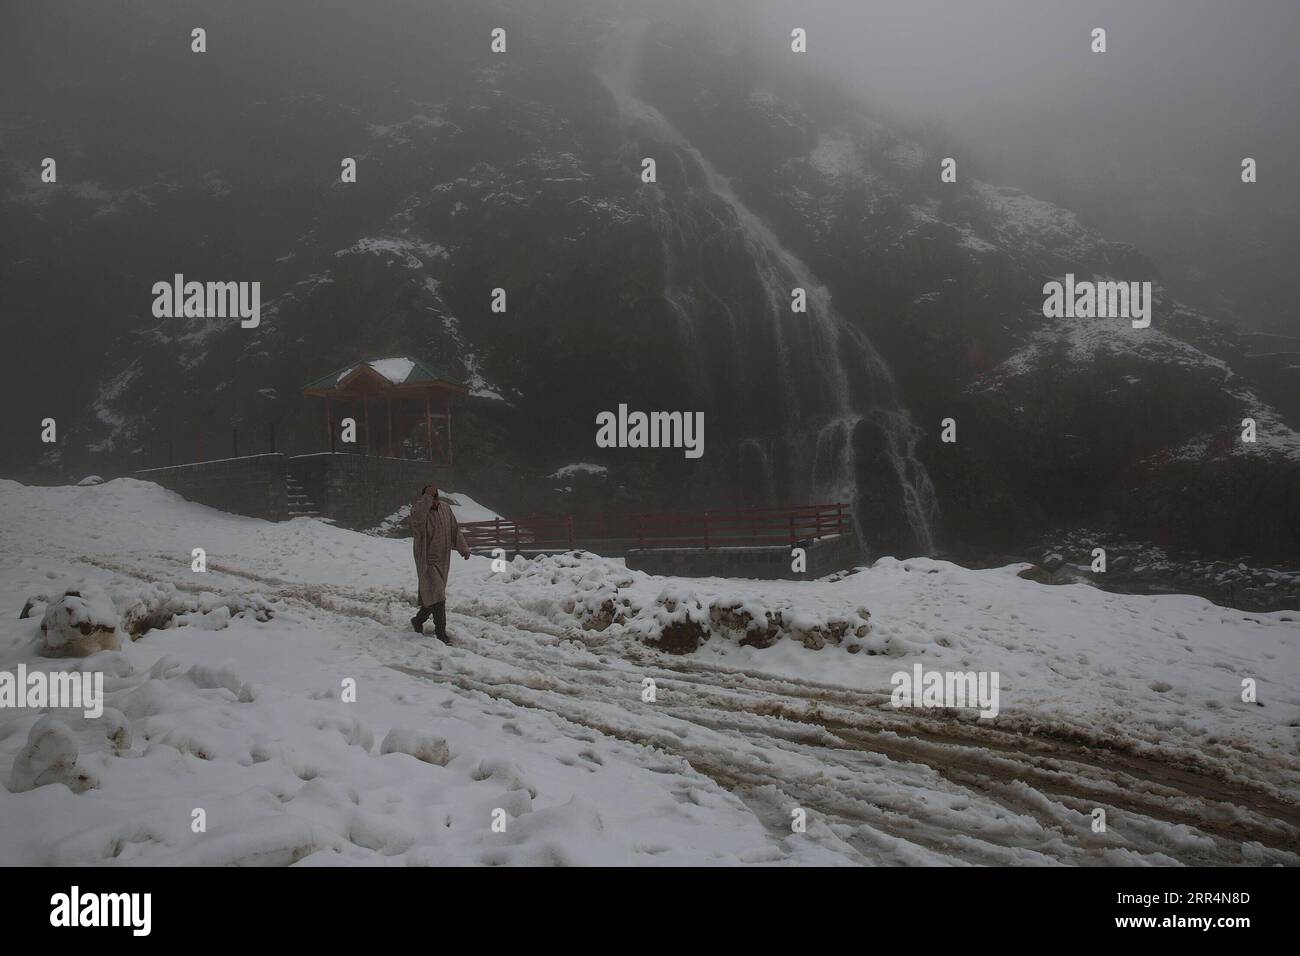 201209 -- SRINAGAR, 9 dicembre 2020 -- Un uomo cammina in mezzo alla nebbia dopo una fresca nevicata in un villaggio nel distretto di Baramulla vicino alla città di Srinagar, la capitale estiva del Kashmir controllato dagli indiani, 9 dicembre 2020. KASHMIR-NEVICATE JavedxDar PUBLICATIONxNOTxINxCHN Foto Stock